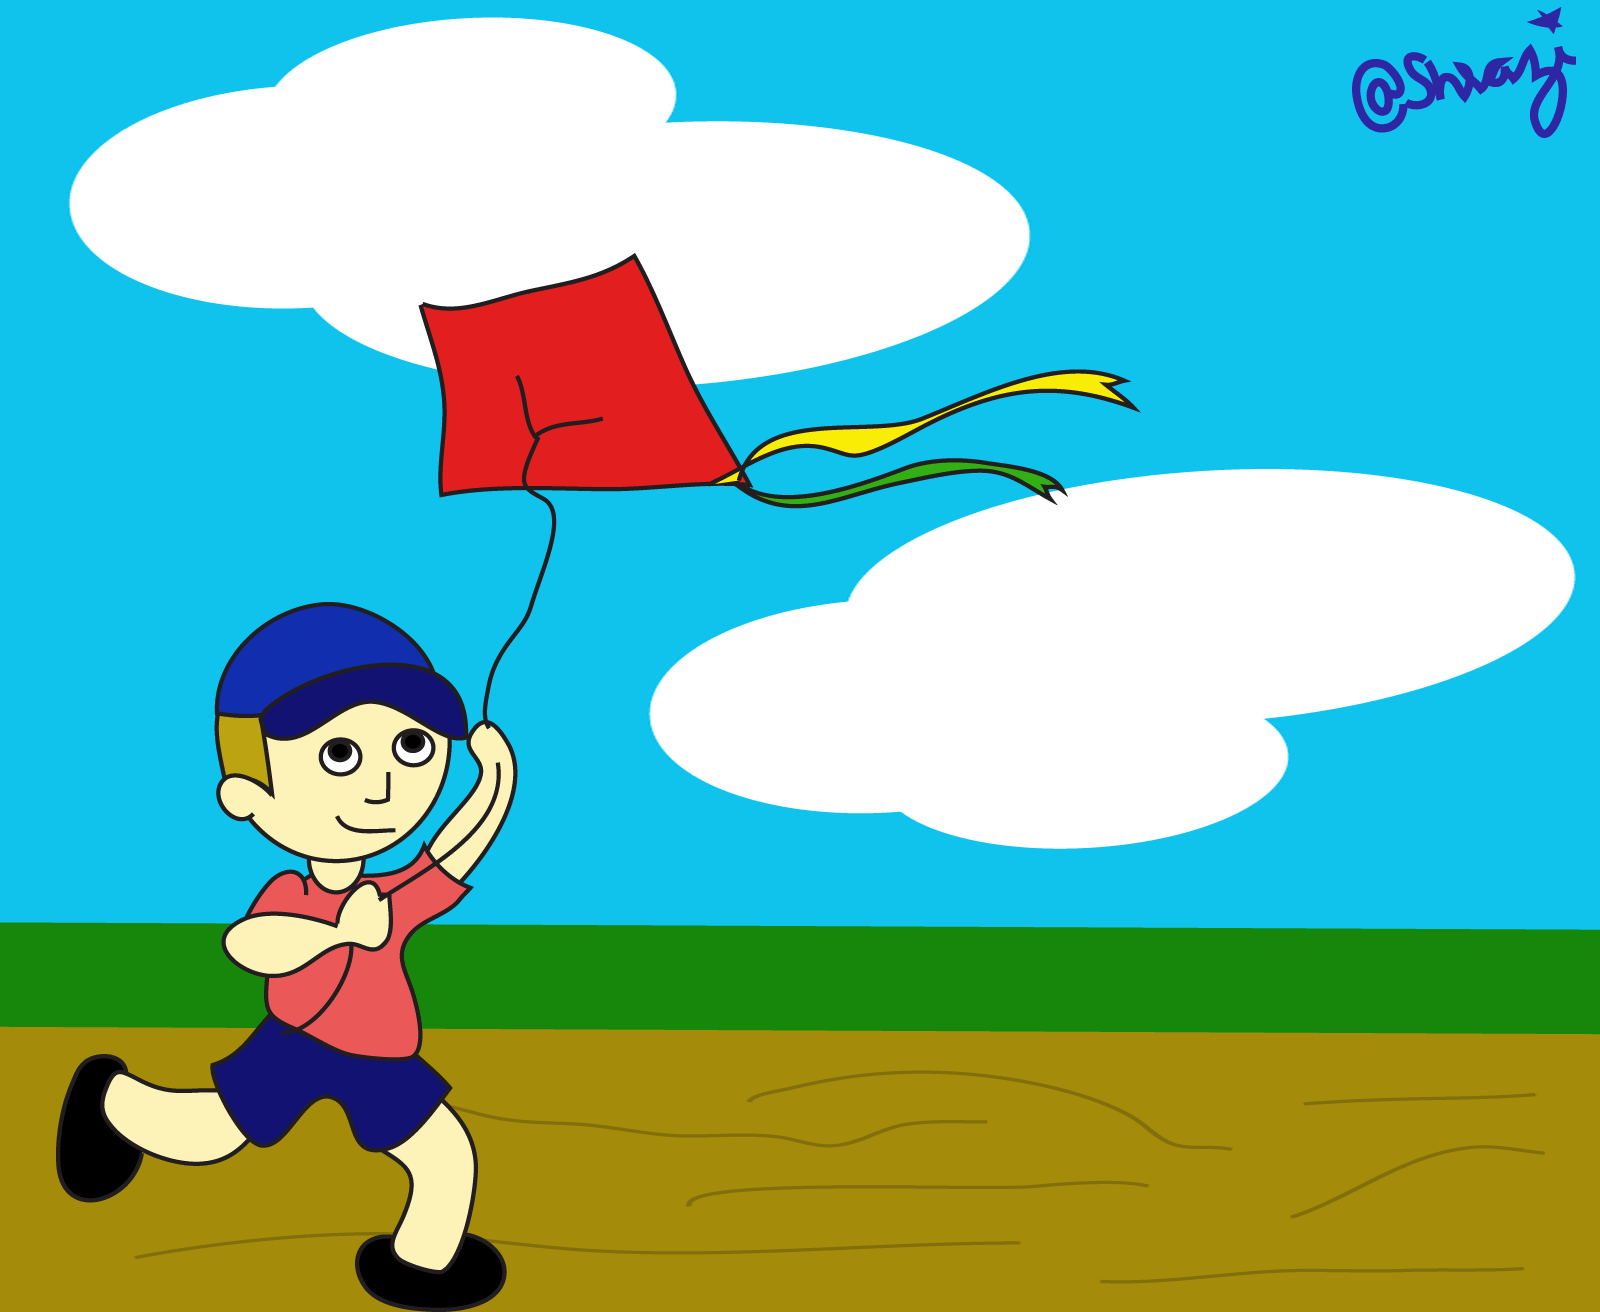 A kite gif